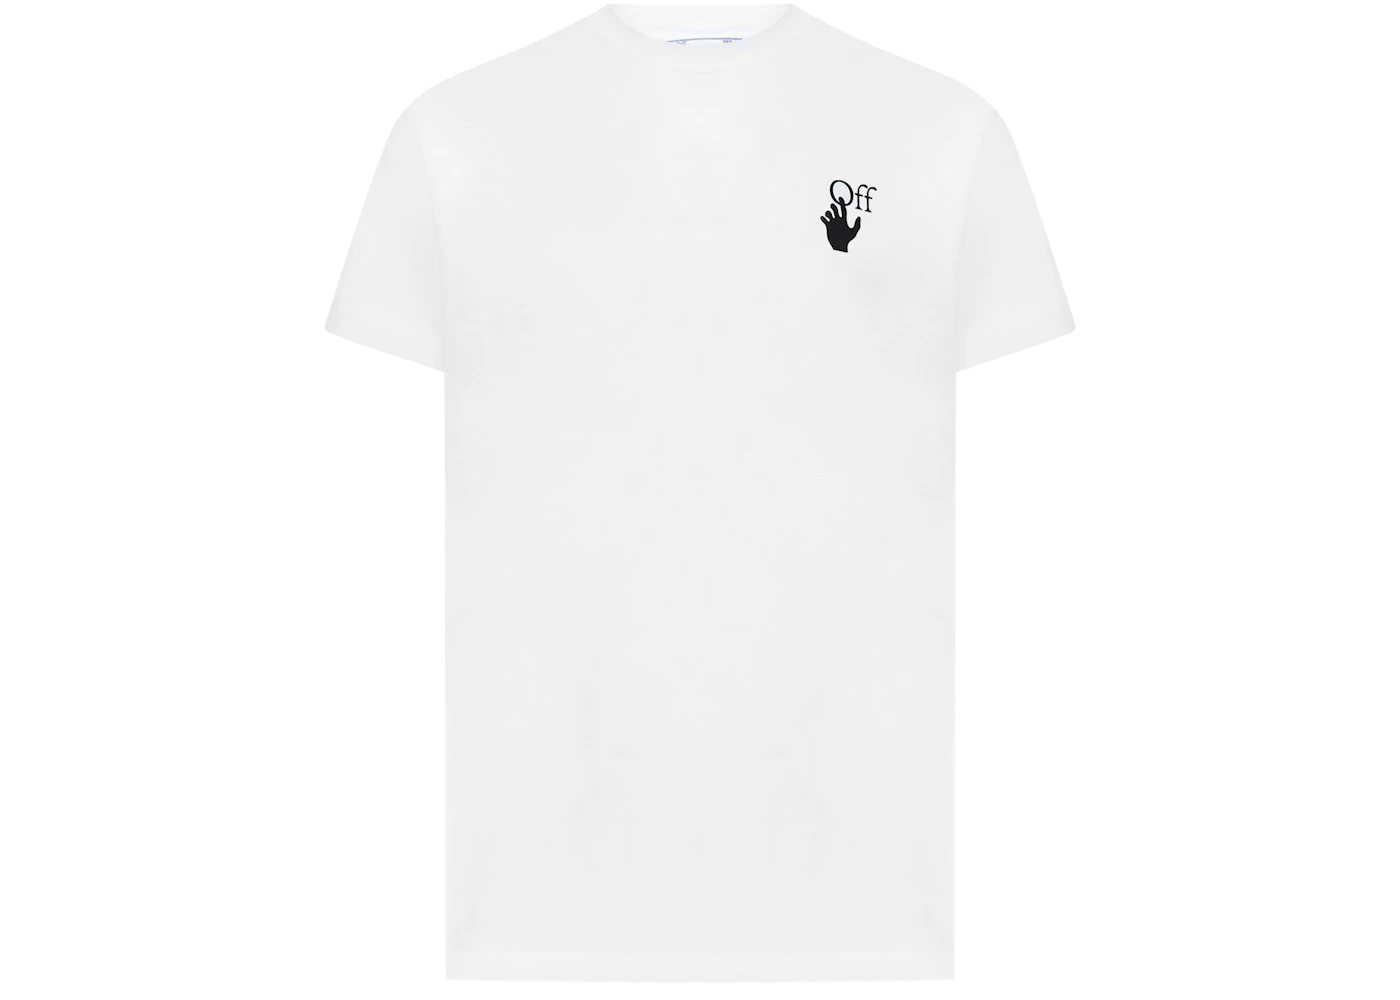 Off White Graffiti Mens T-shirt – Limited Supply ZA